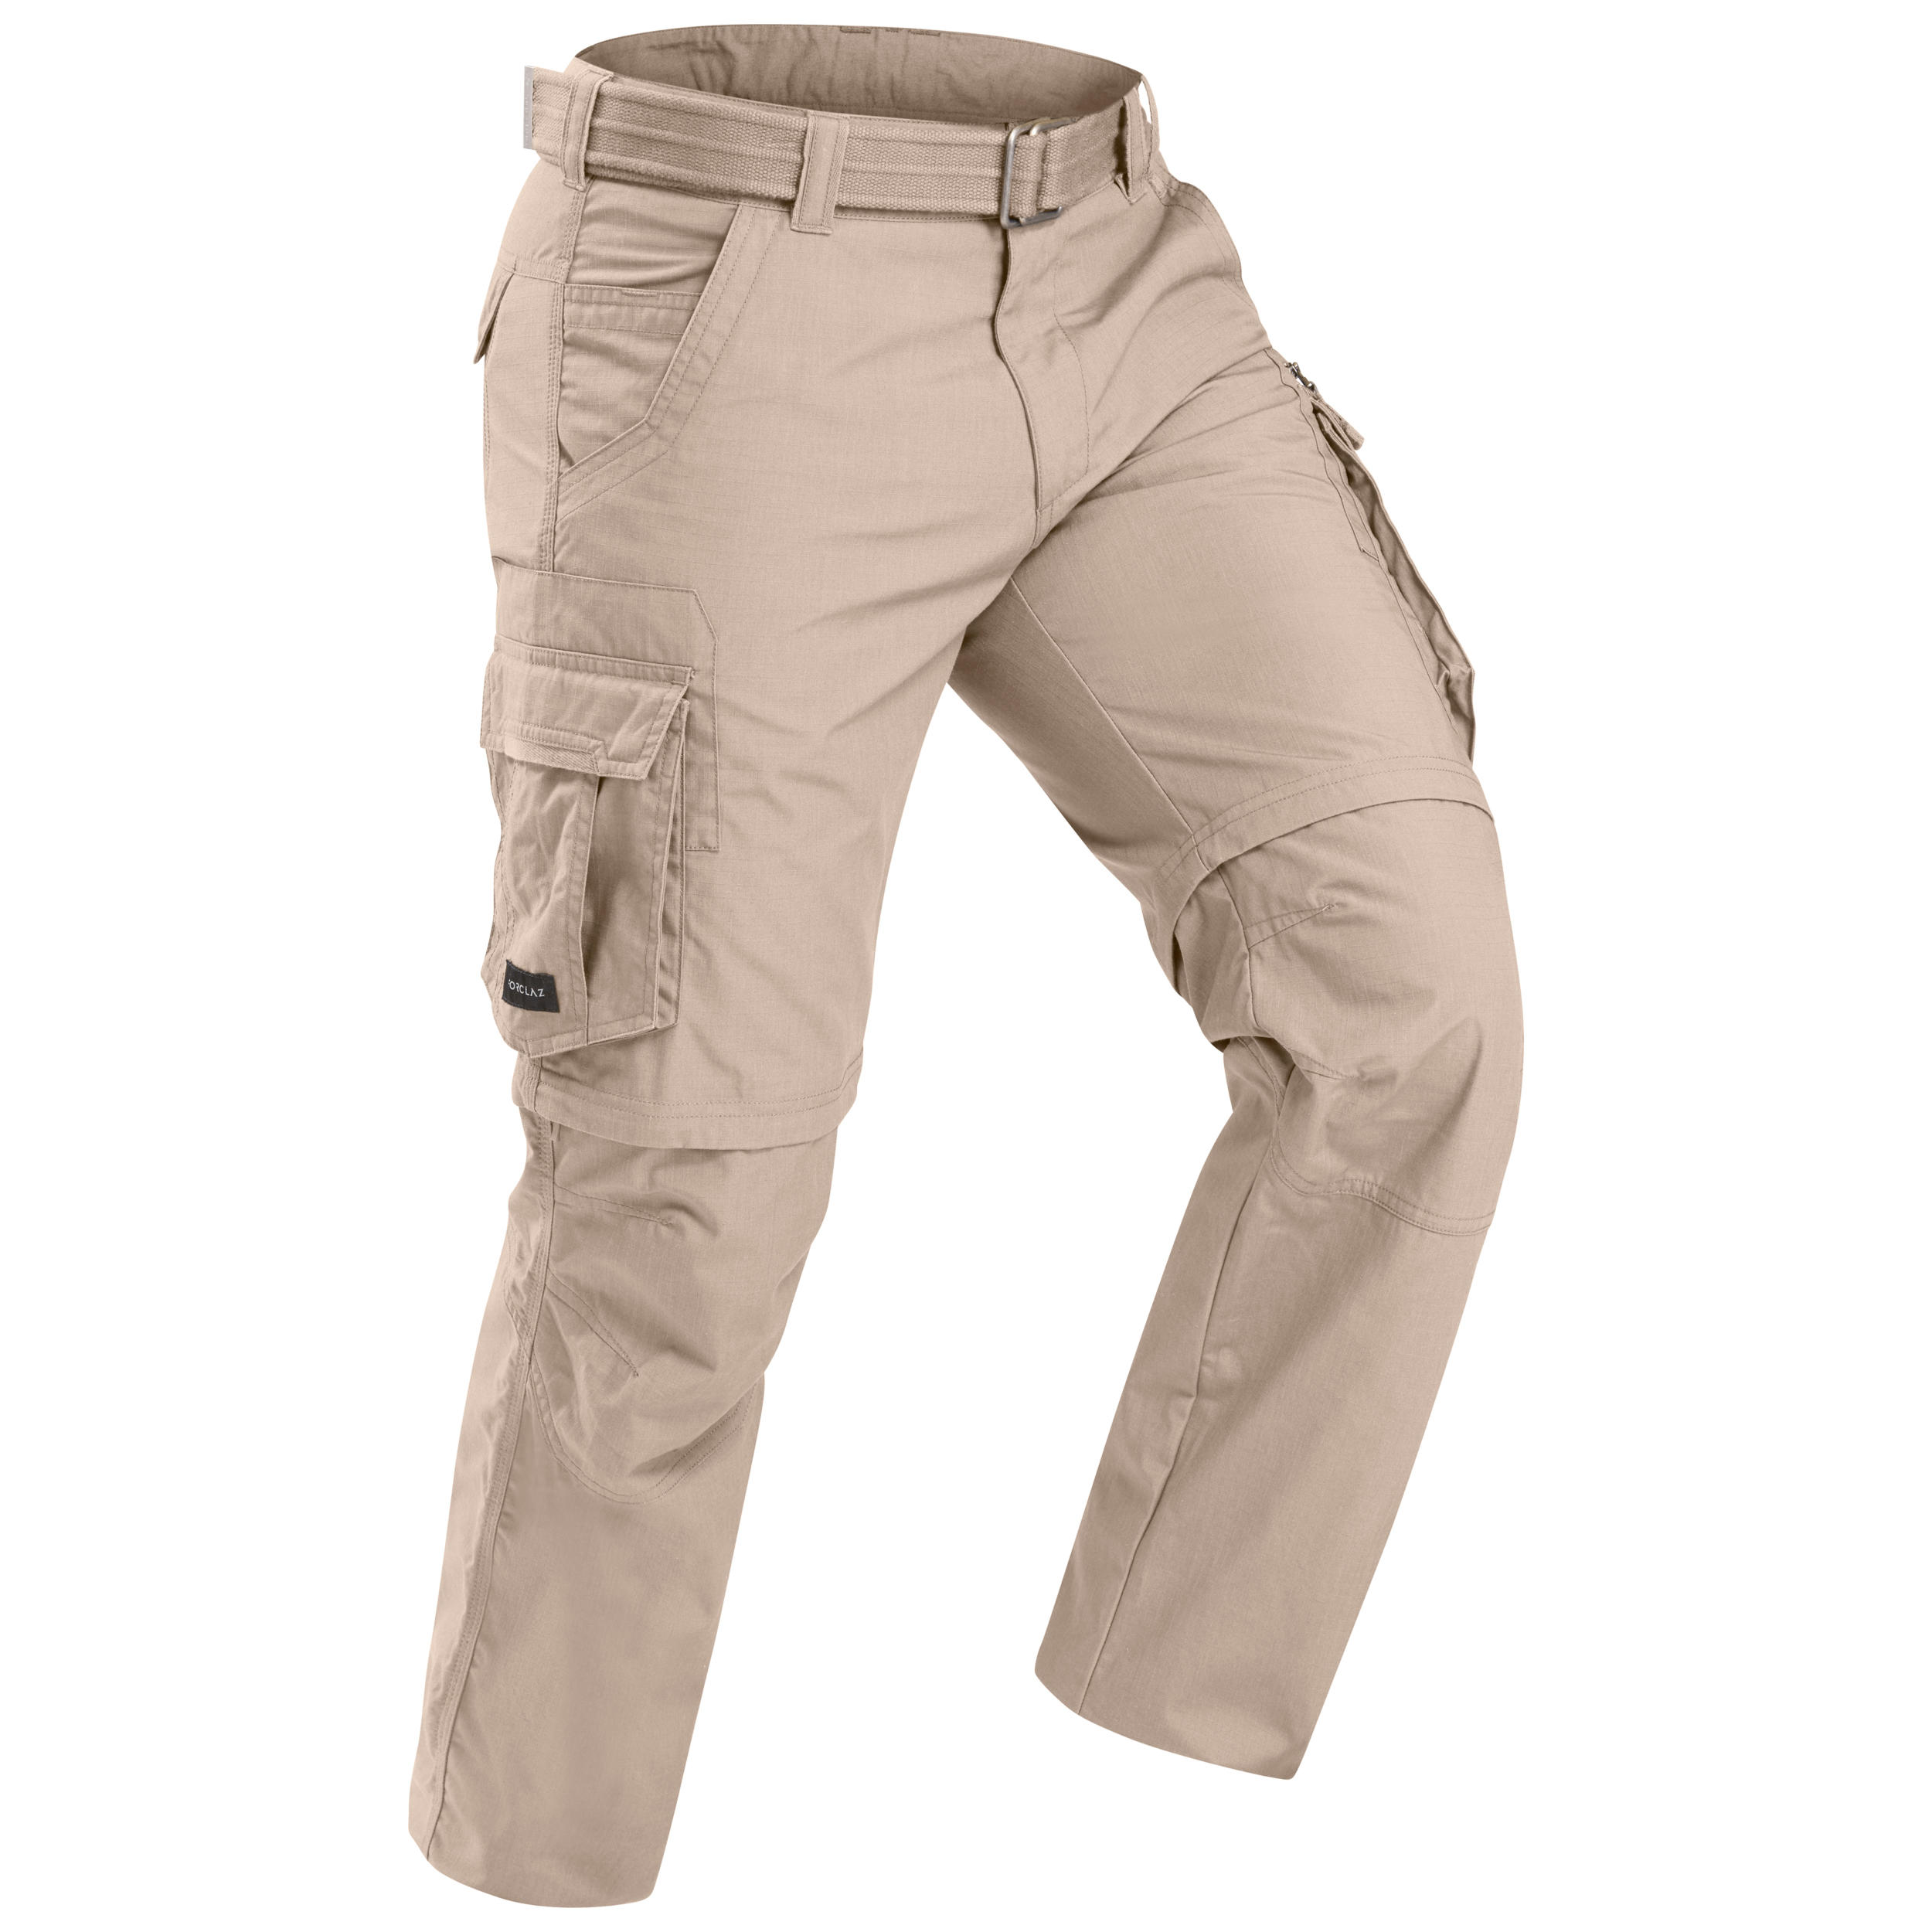 Men's Travel Trekking Zip-Off Cargo Trousers - Travel 100 Zip-Off - sand 2/10